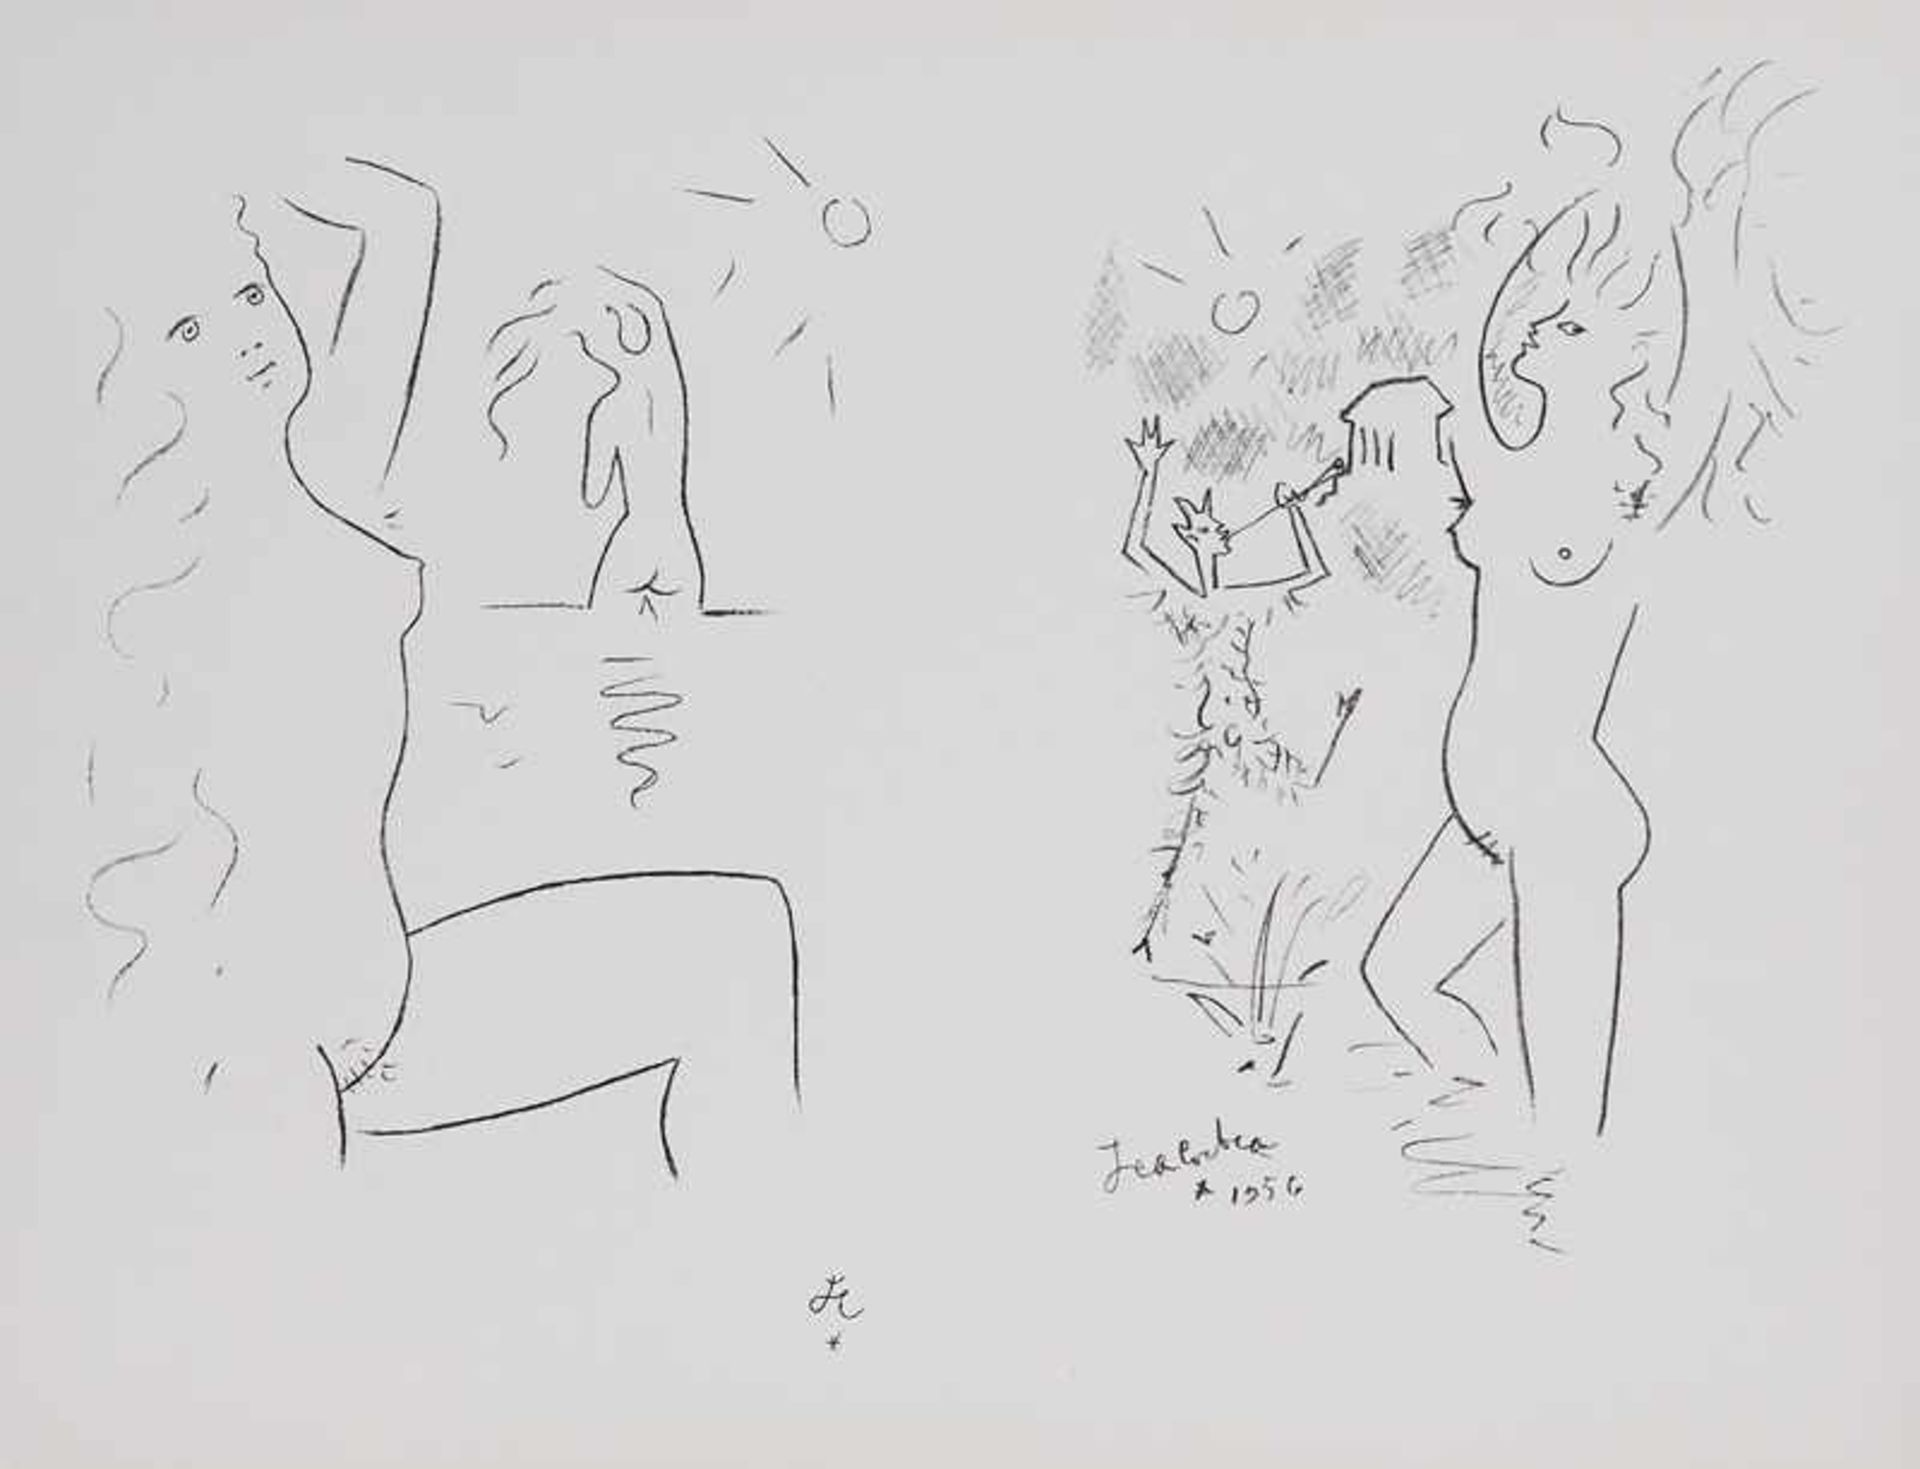 Cocteau, Jean. (1892 - 1963 Paris). Entwurf für die Wandmalereien von Villefranche u. Menton. (